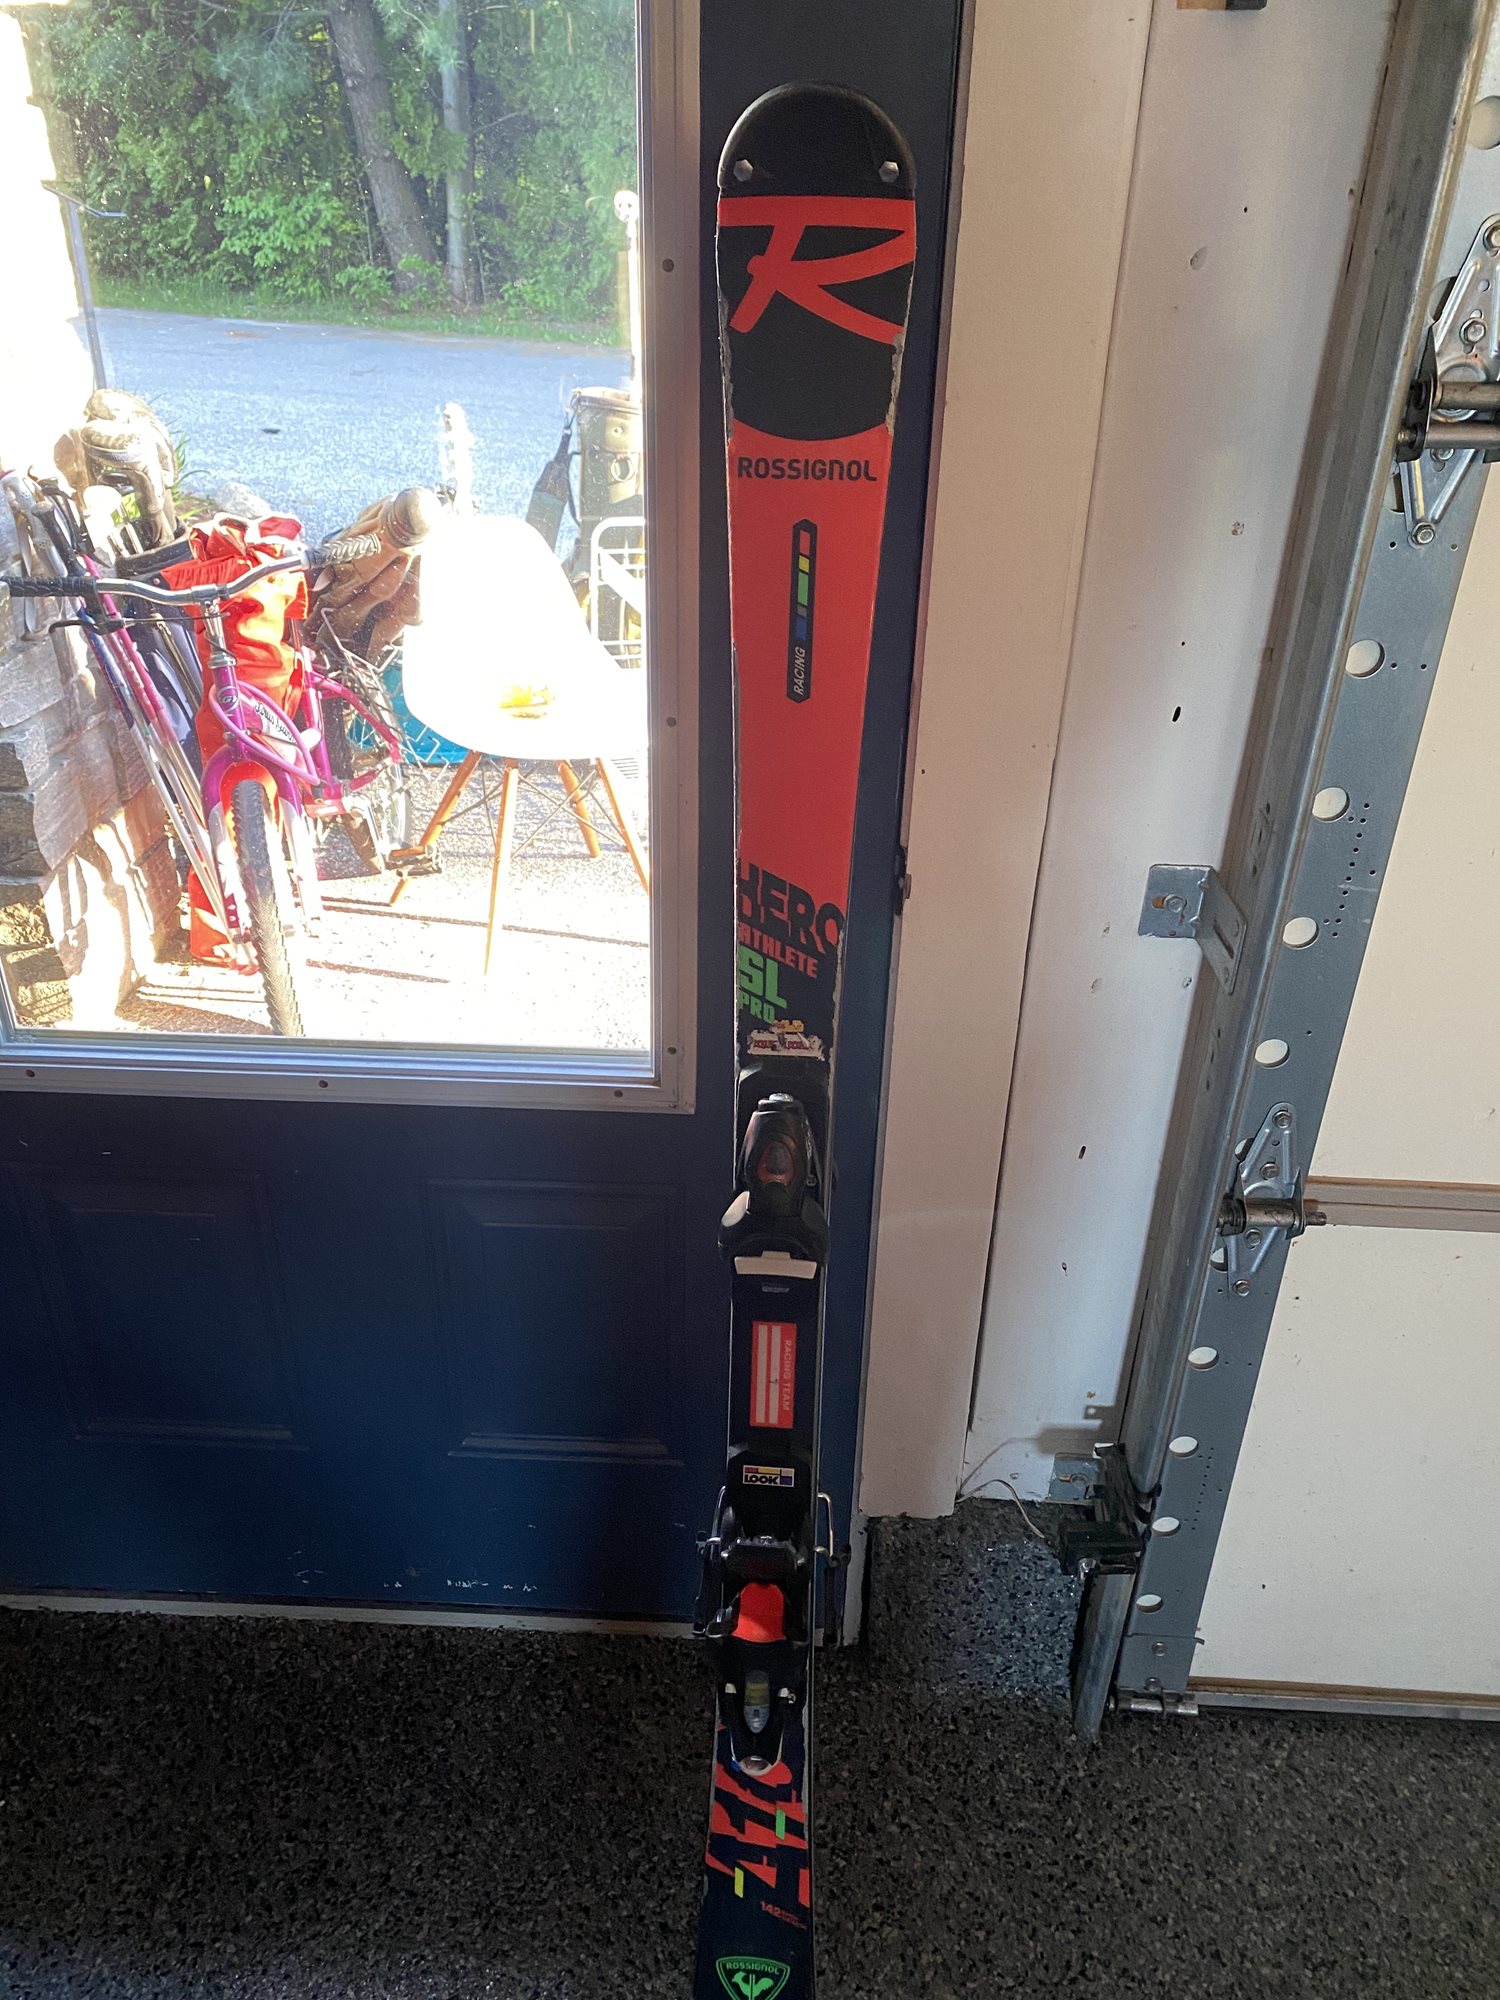 Rossignol Hero Athlete SL Pro 142 cm skis and bindings